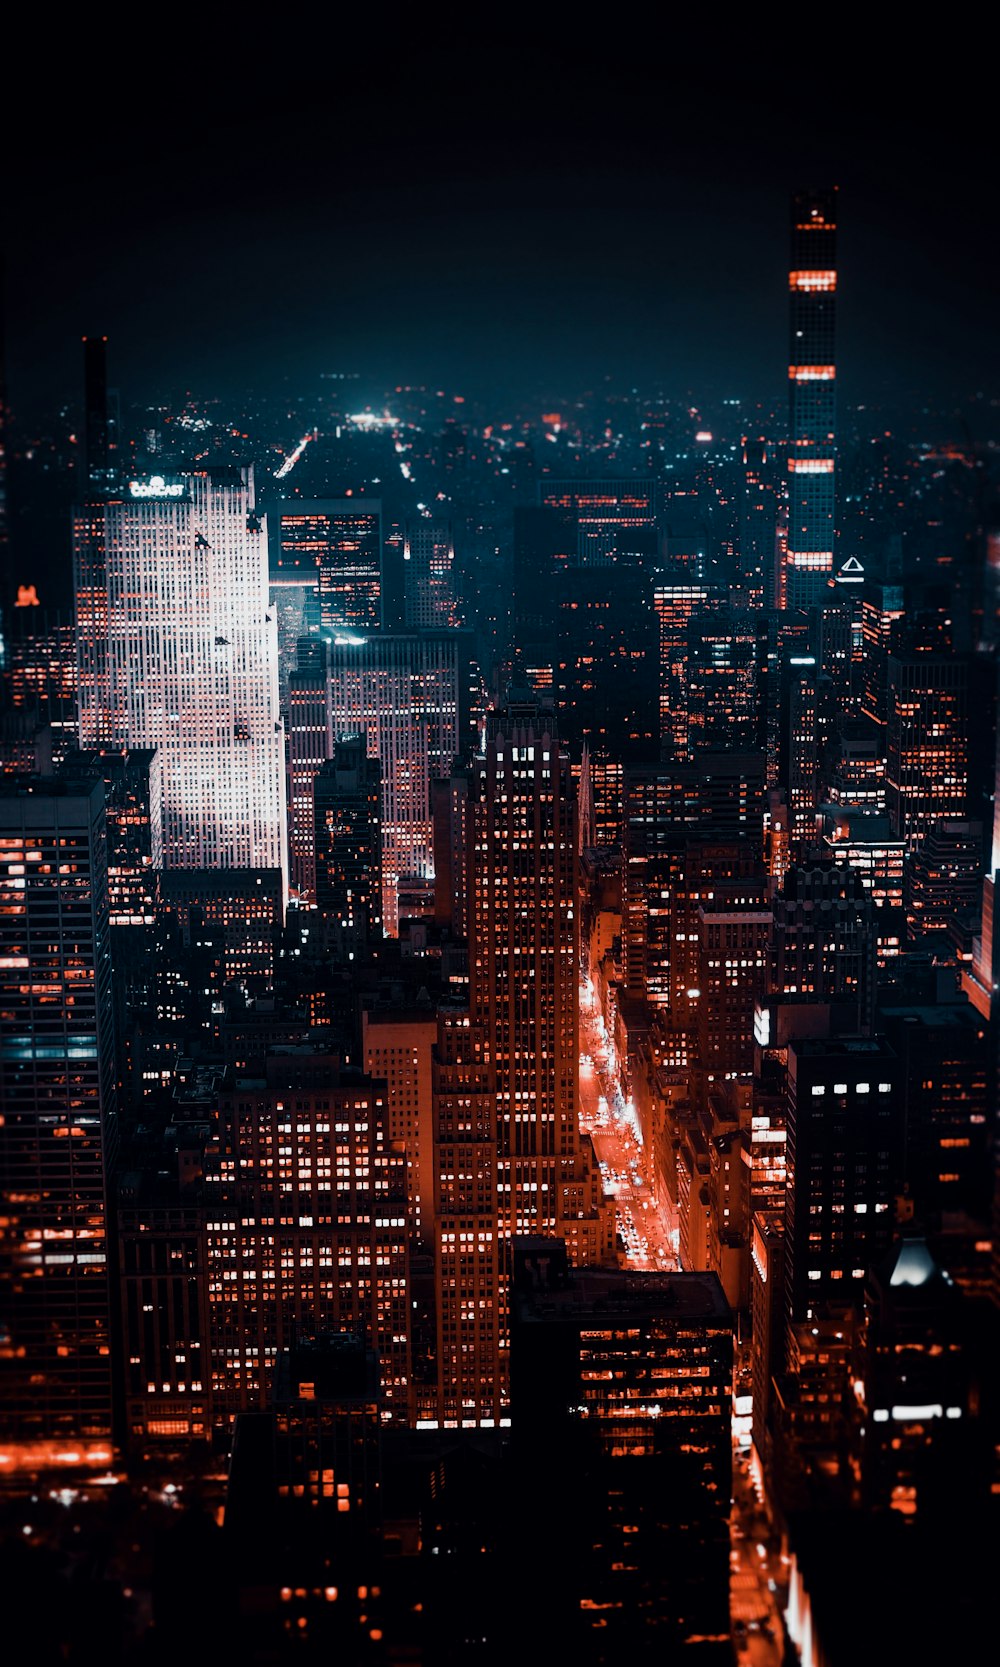 Photographie aérienne d’une ville avec des immeubles de grande hauteur pendant la nuit